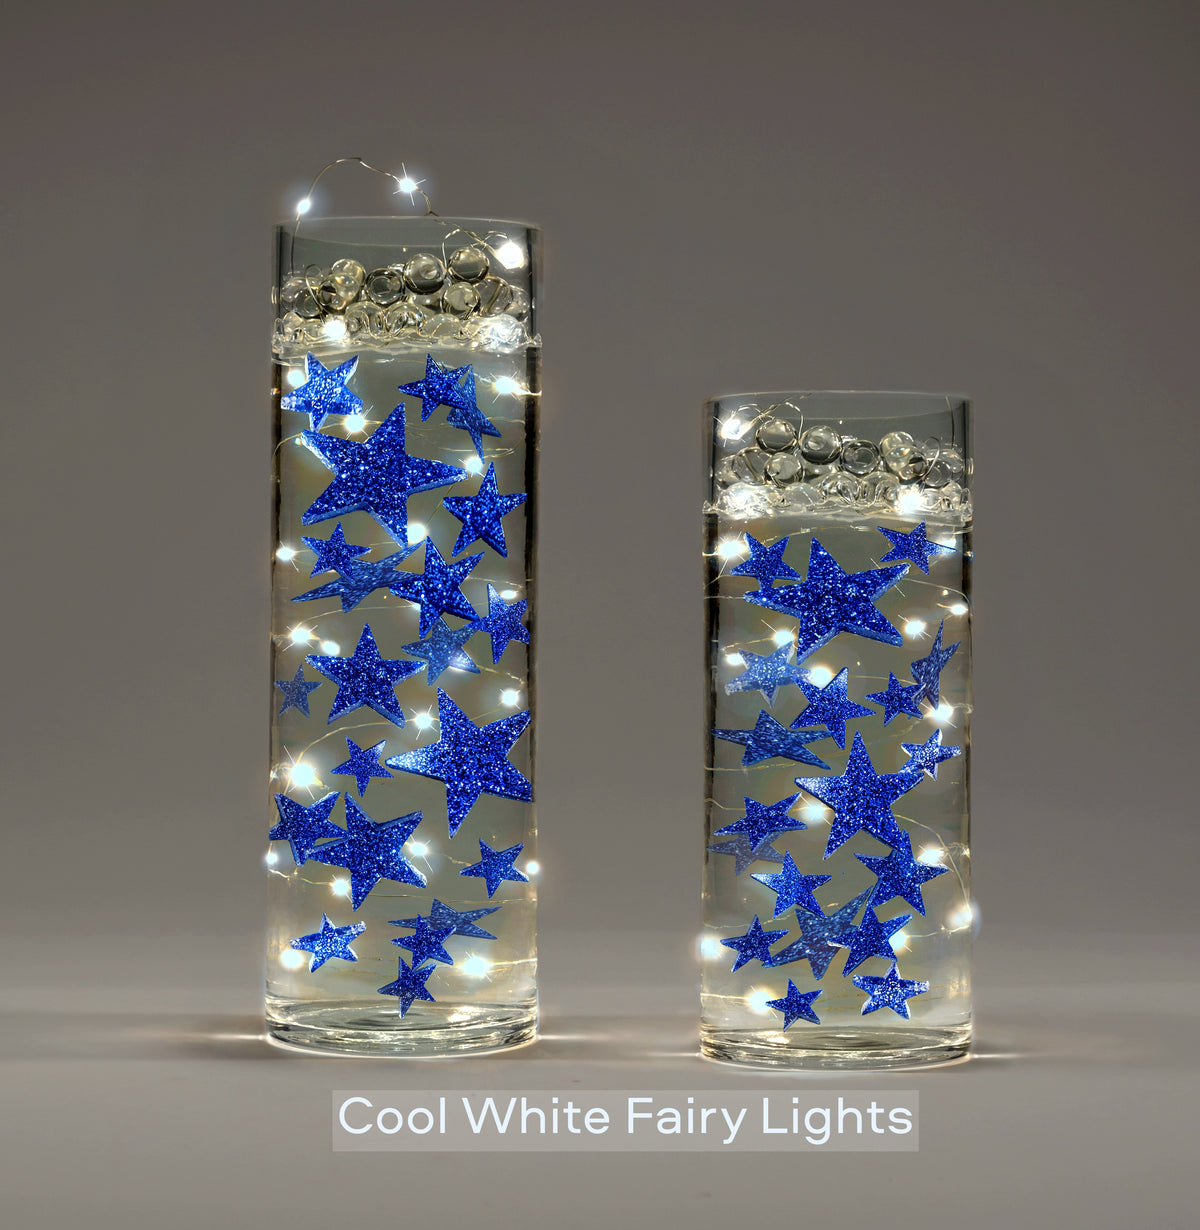 Étoiles flottantes scintillantes bleu-remplit des gallons pour vos vases-y compris des kits de gels d'eau transparents pour un look flottant-option de guirlandes lumineuses submersibles-superbes décorations de vase